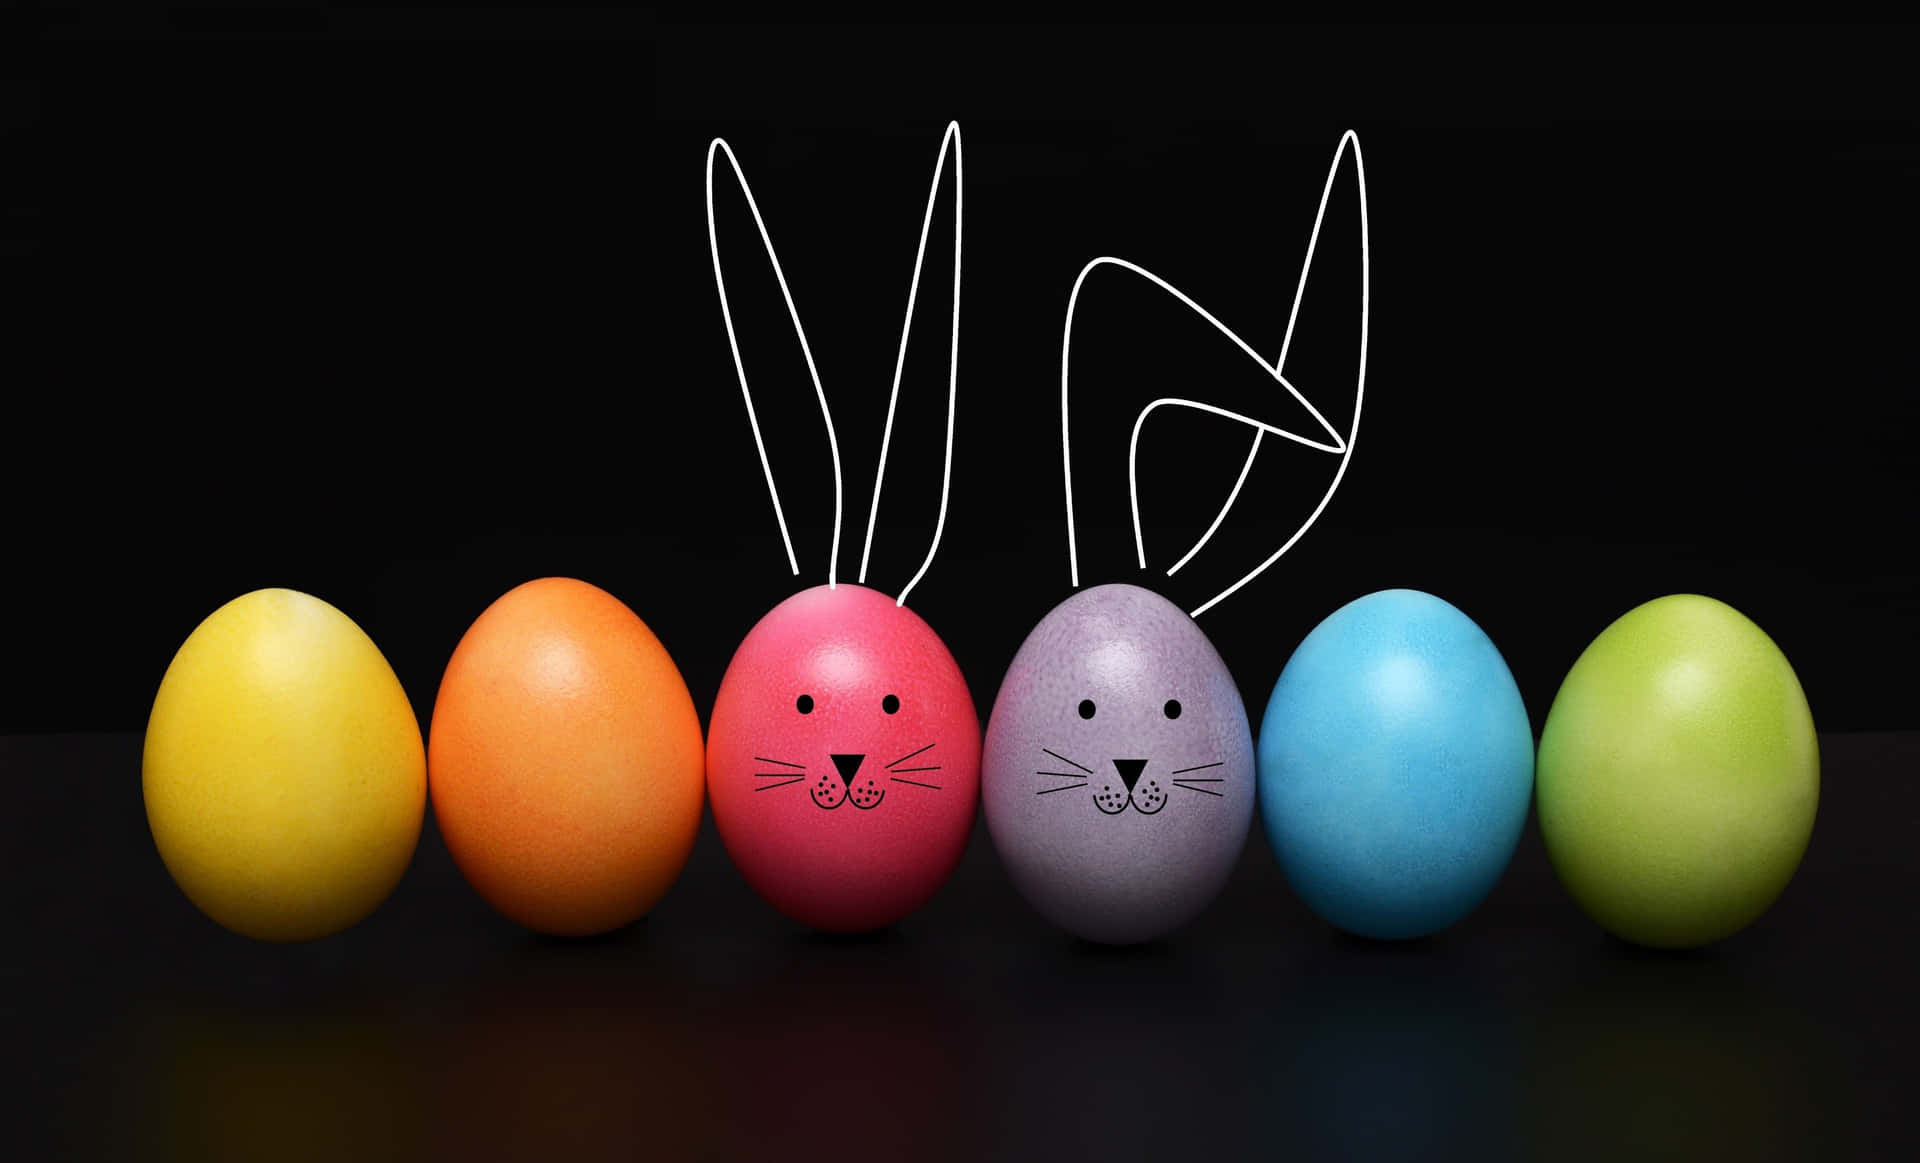 Imagendivertida De Huevos De Pascua Con Conejito De Pascua